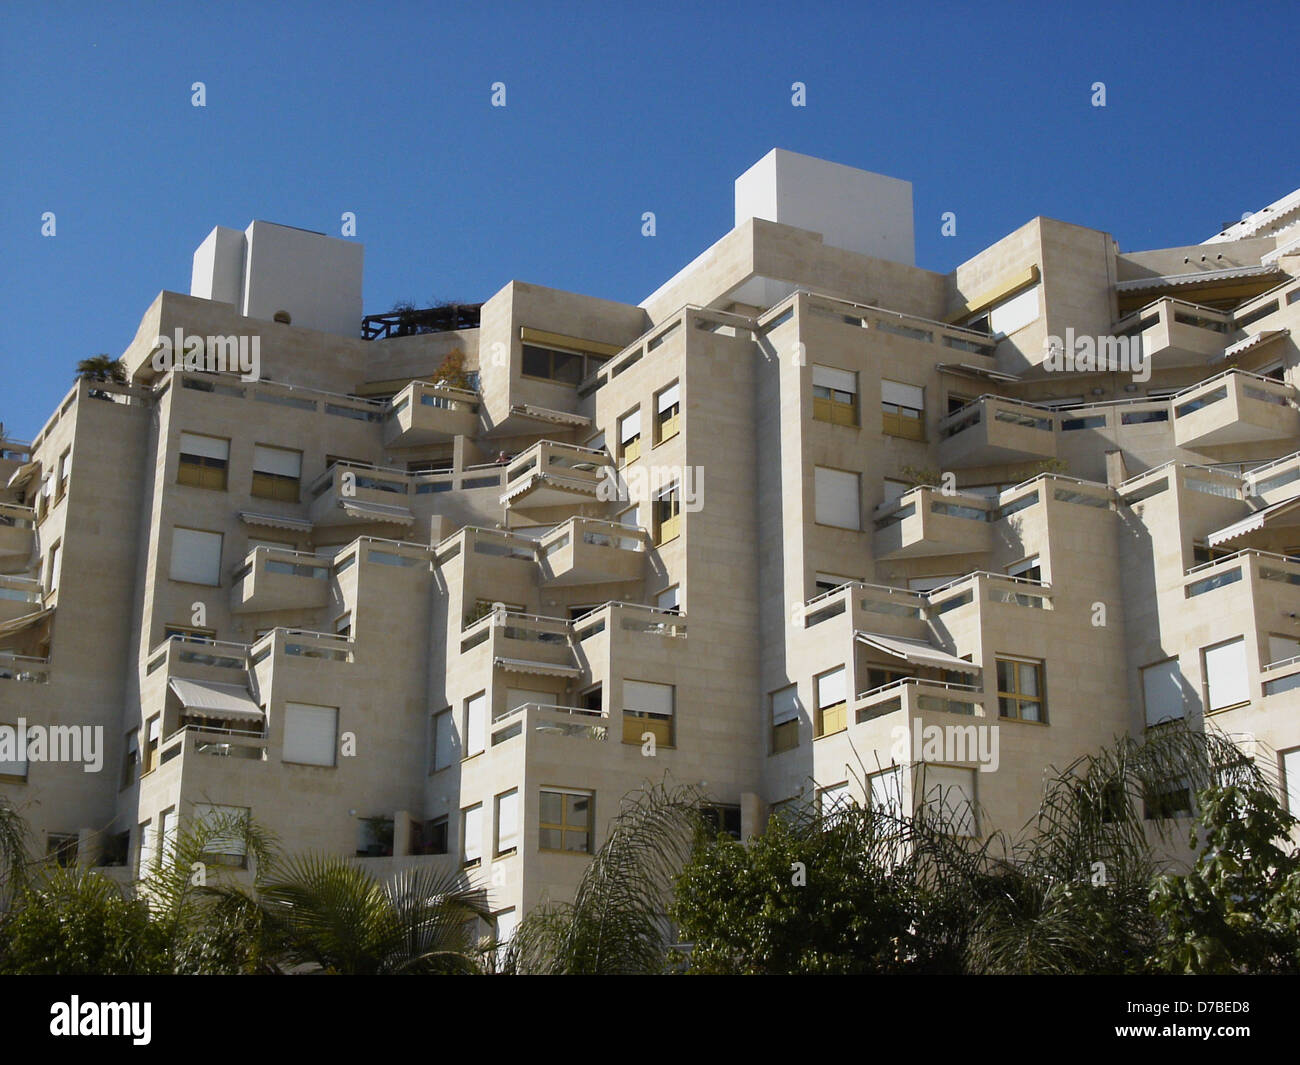 golda buildings in tel aviv Stock Photo